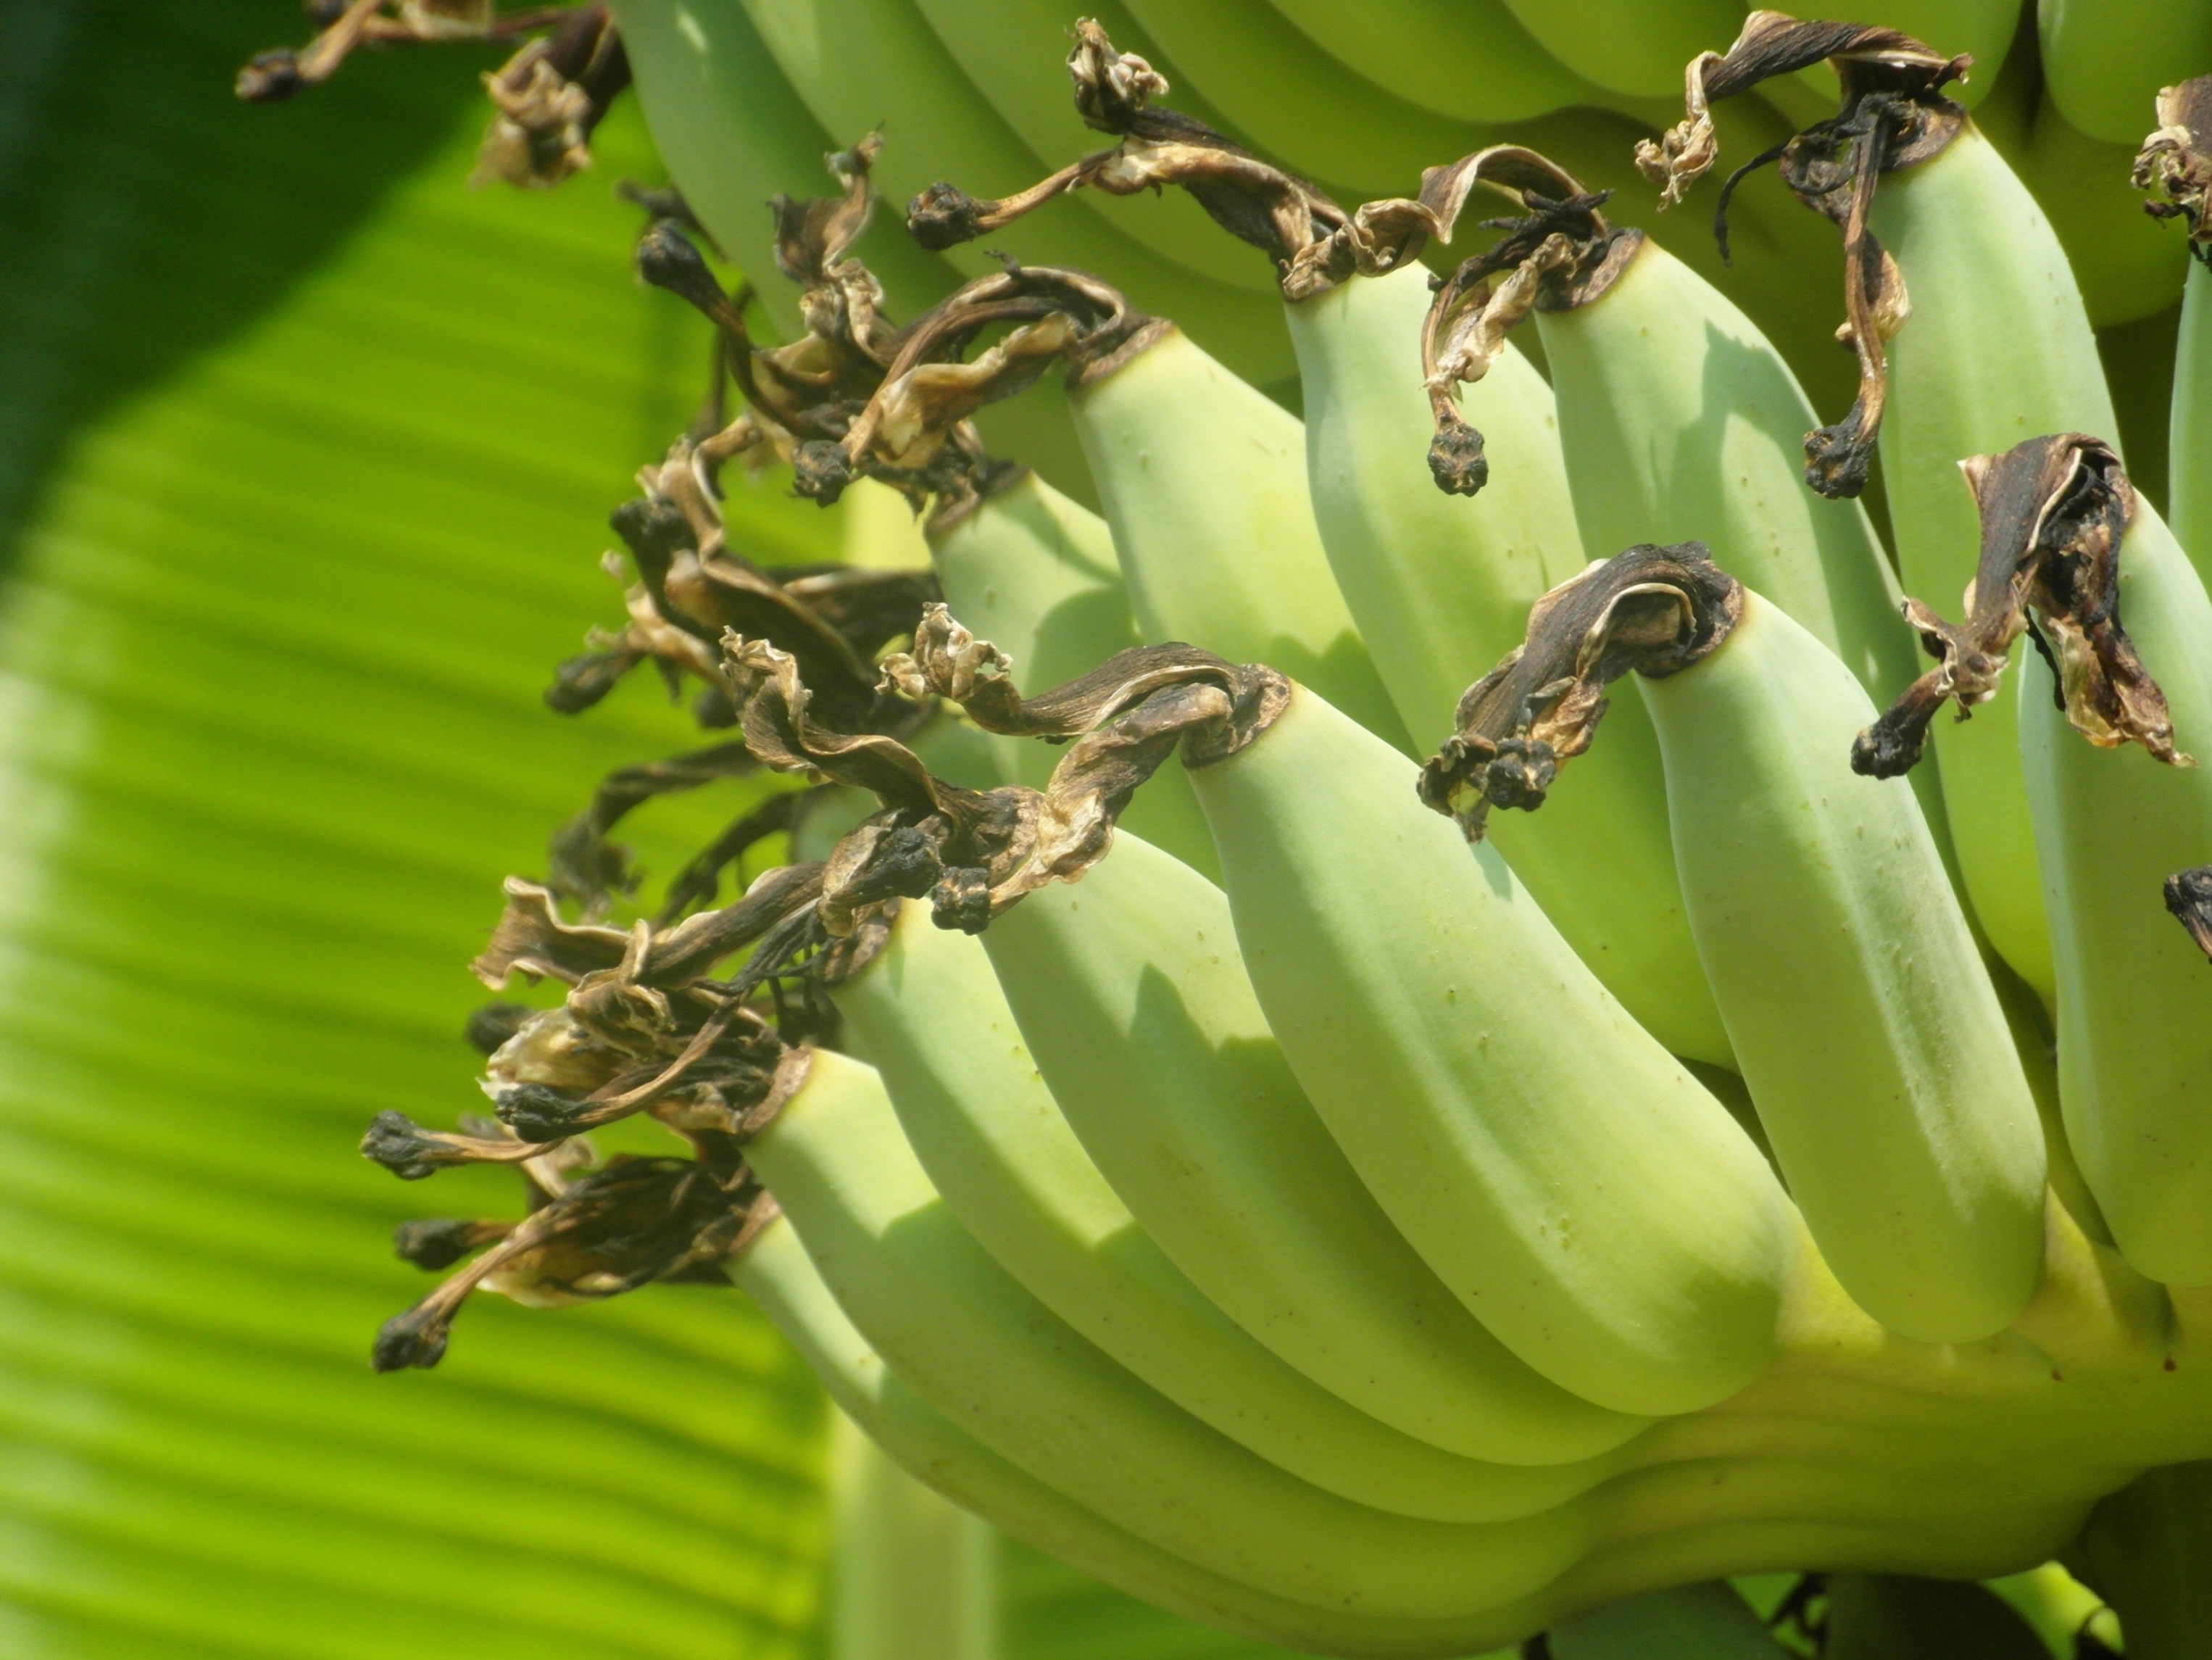 Banana bunch photo